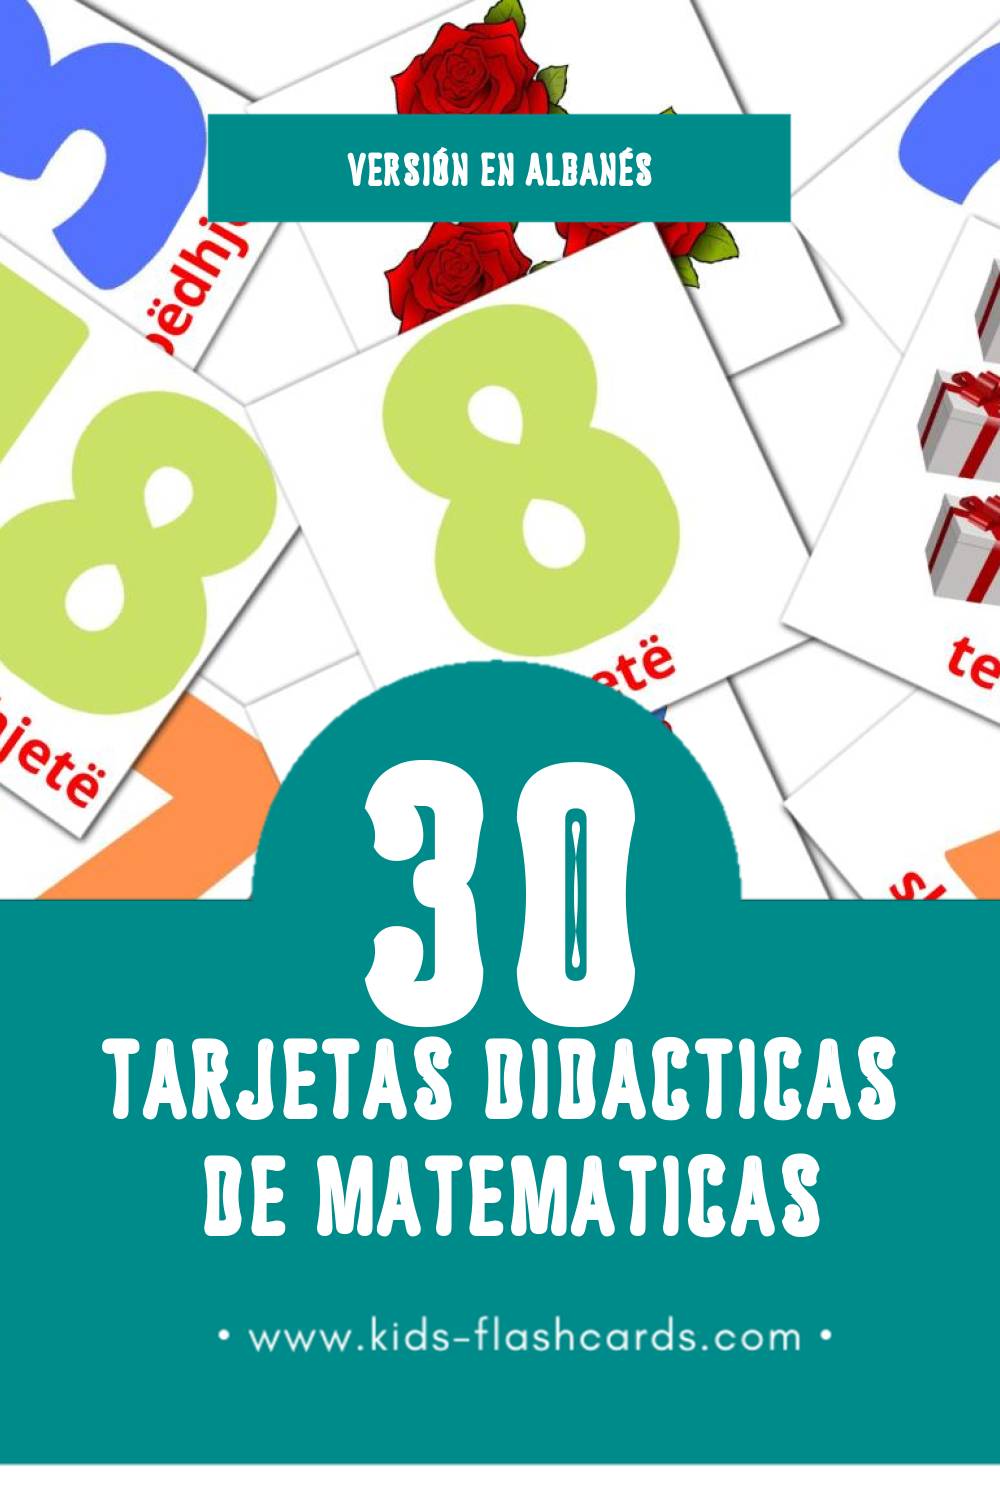 Tarjetas visuales de Matematik para niños pequeños (30 tarjetas en Albanés)